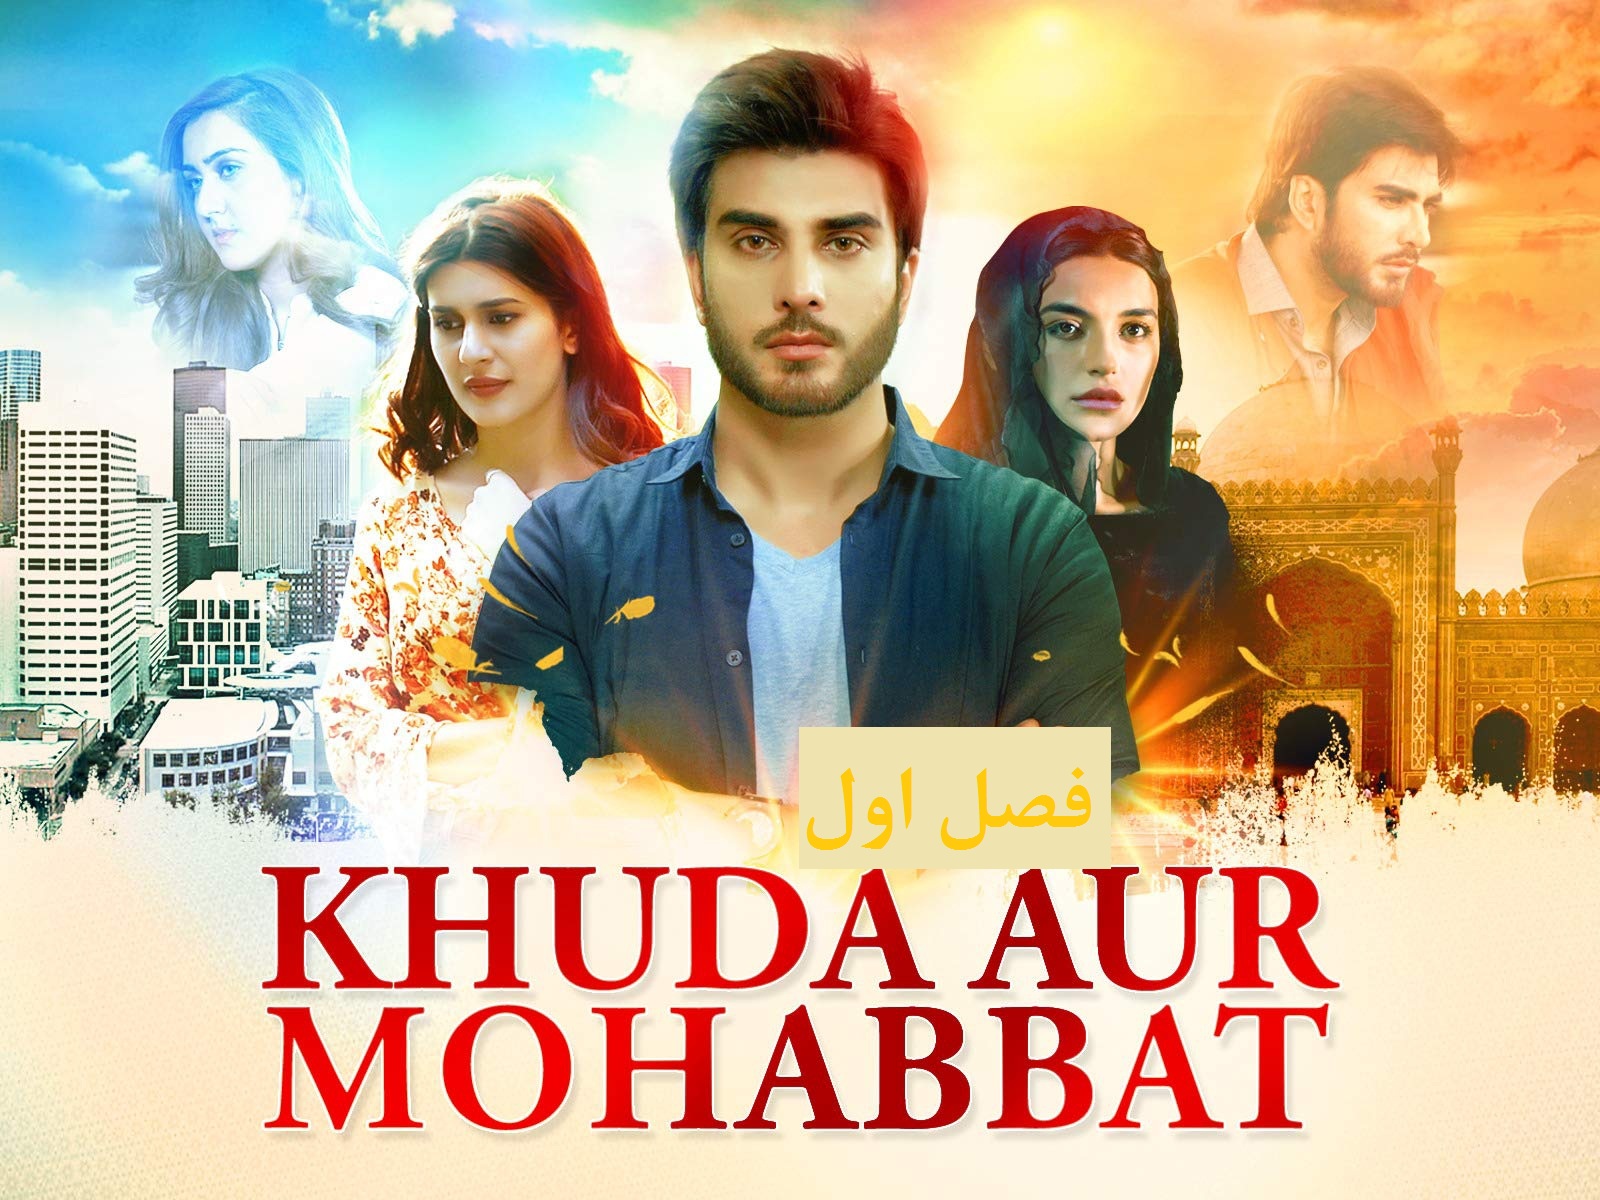 سریال پاکستانی  khuda aur mohabbat season 1